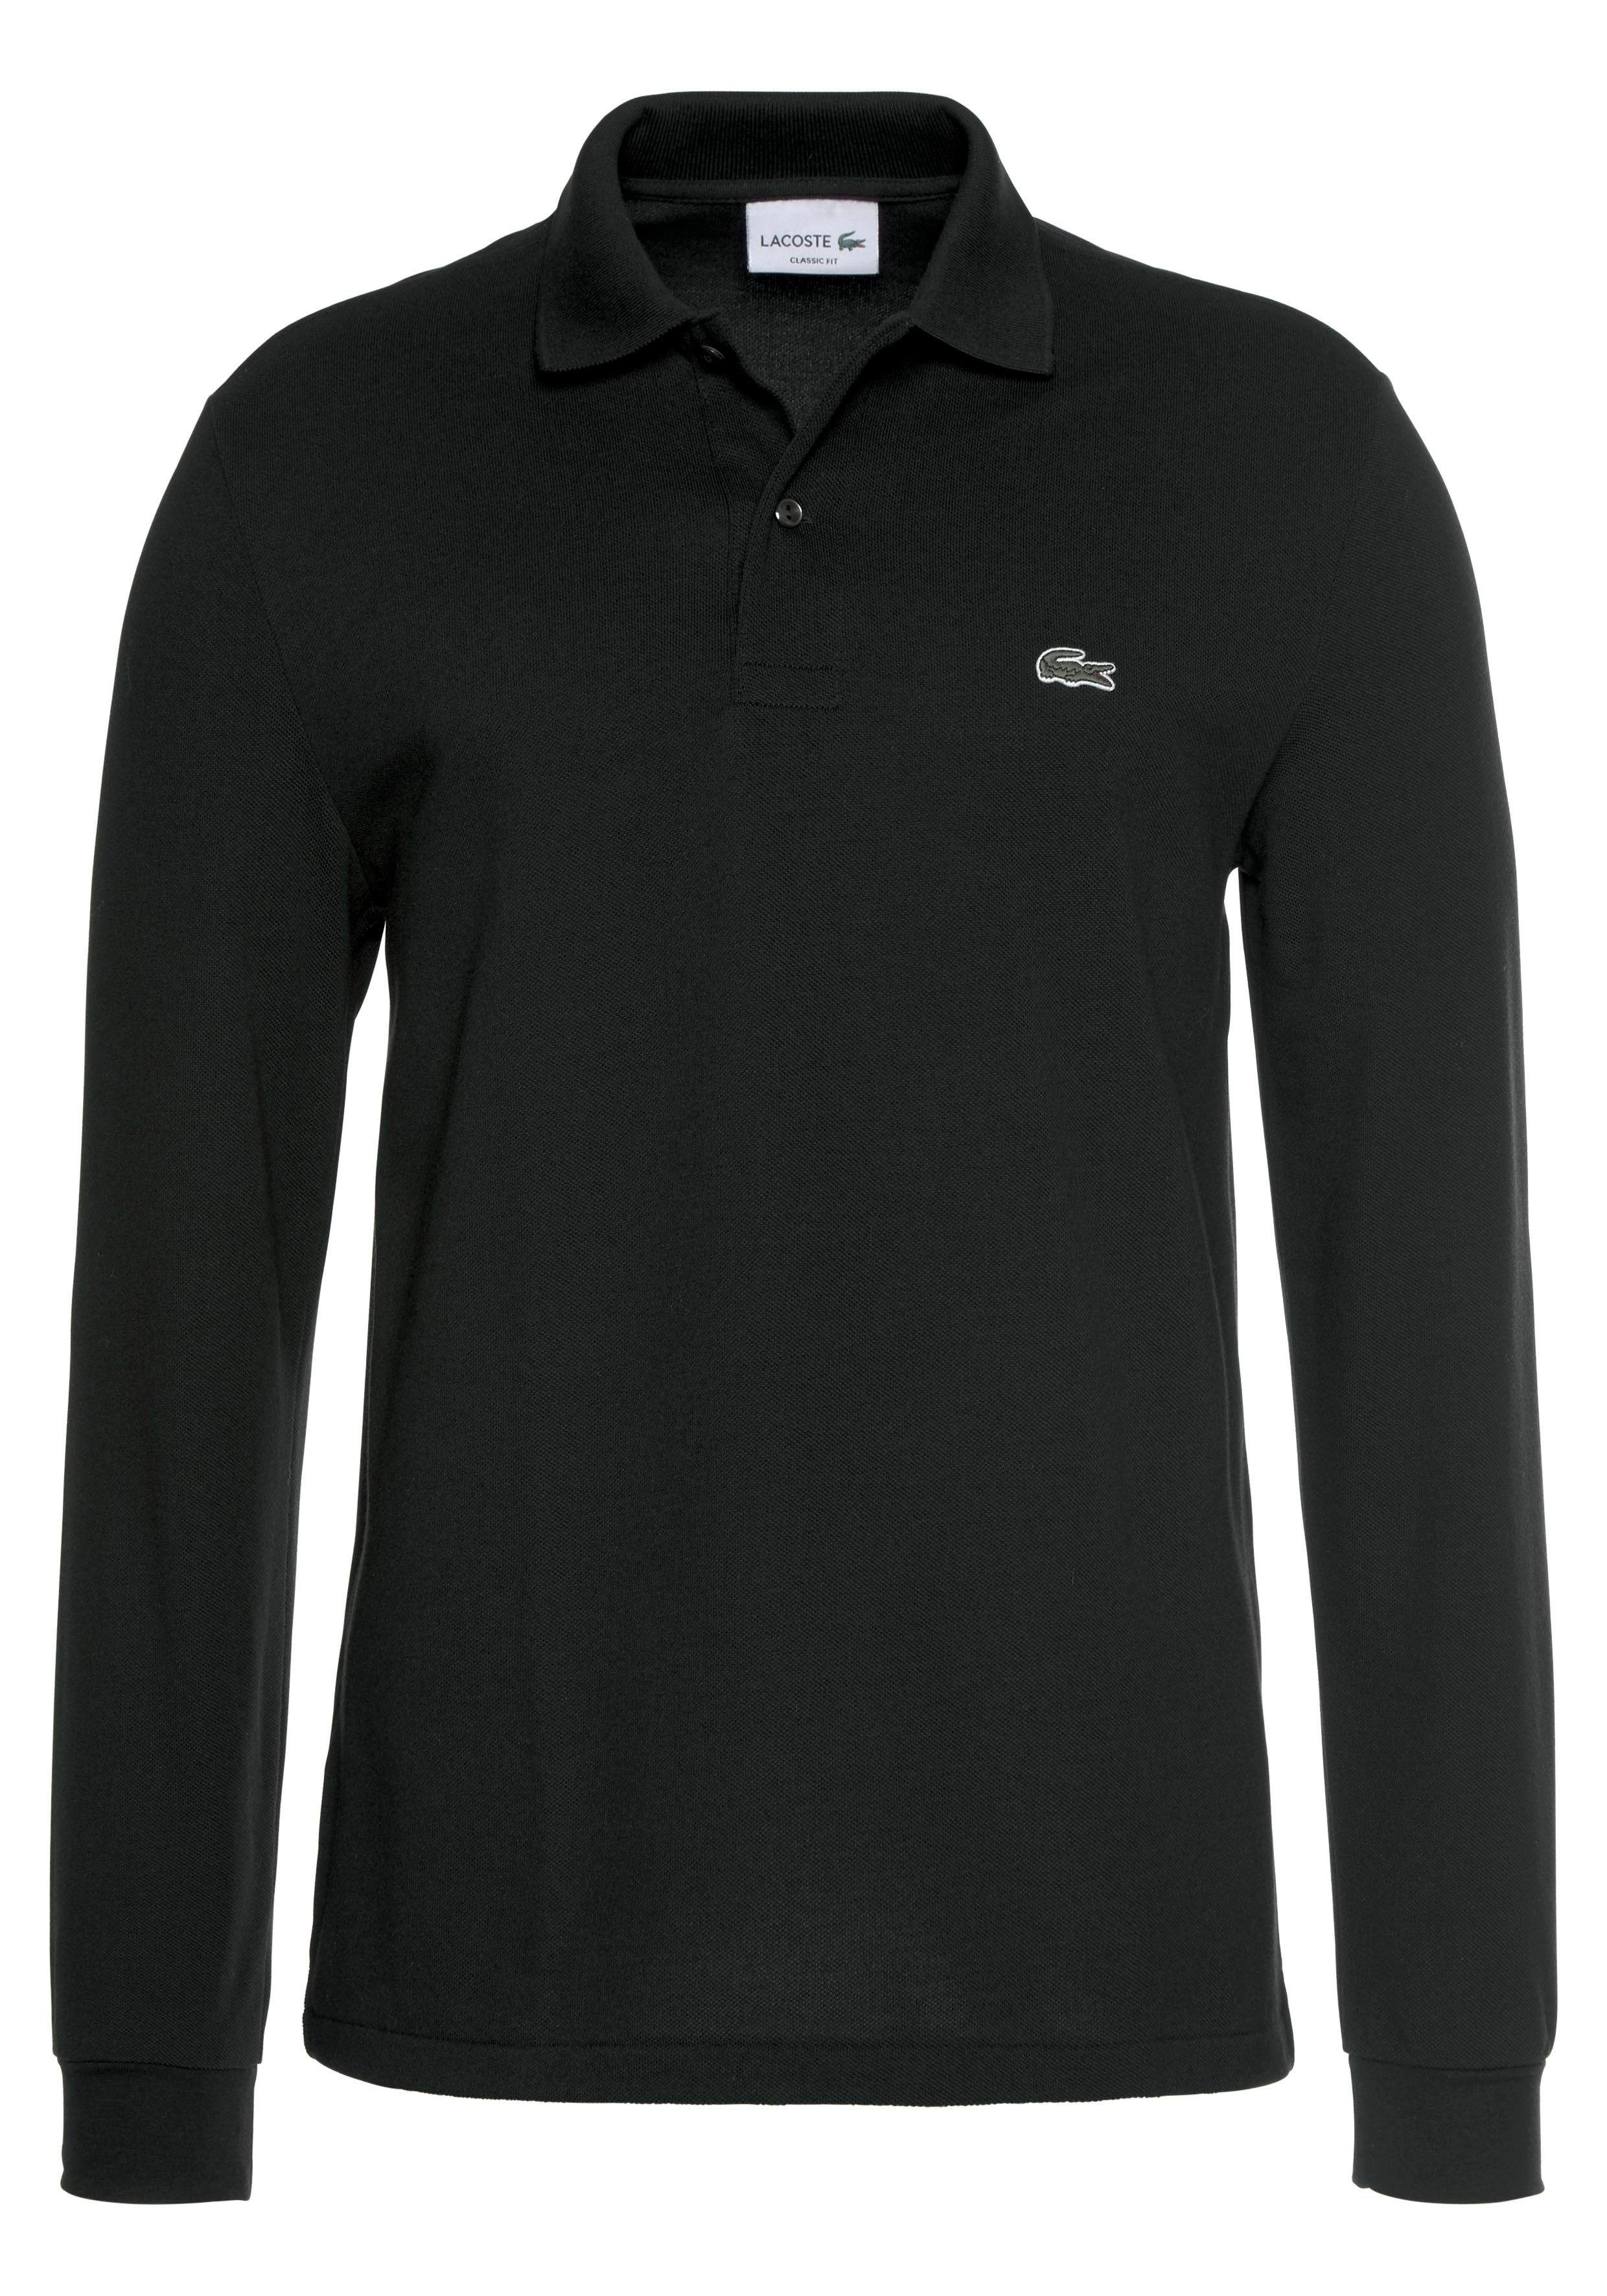 Lacoste Langarm-Poloshirt Basic Style schwarz